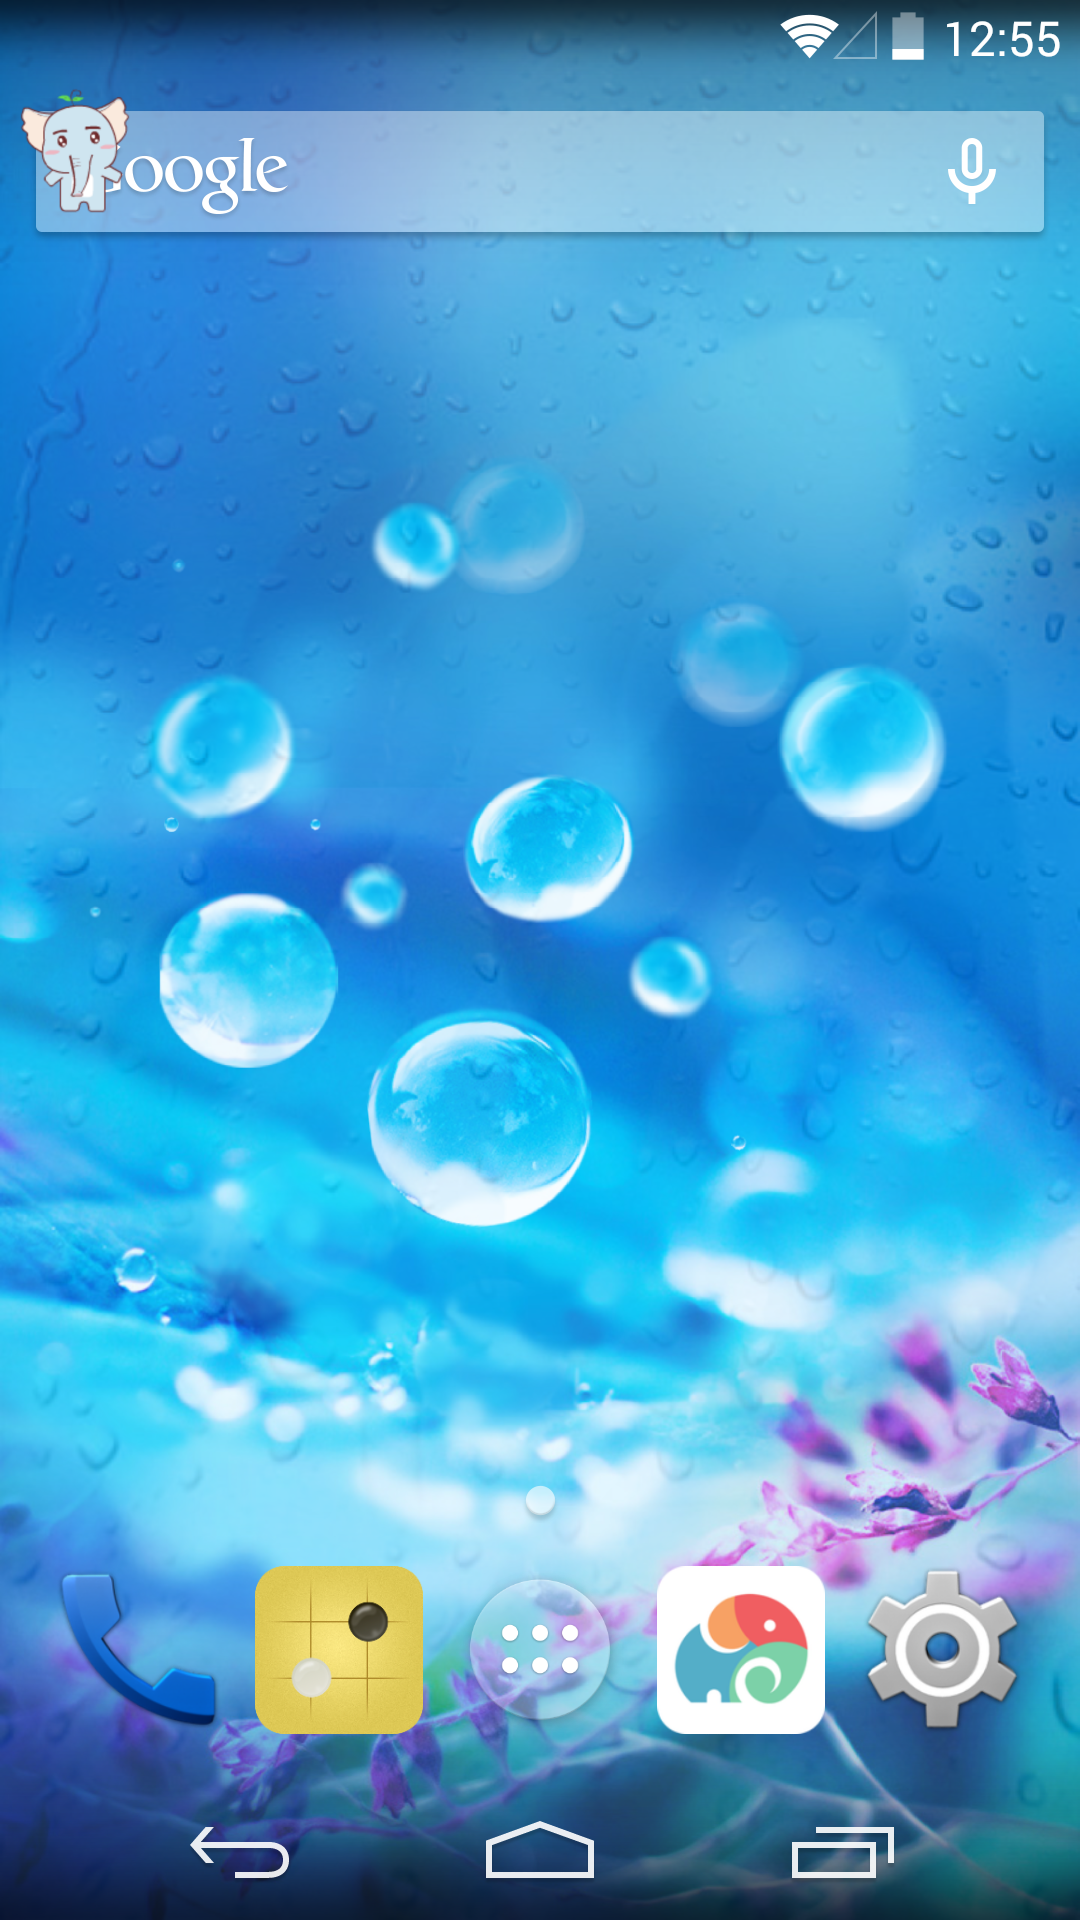 蓝色泡泡梦象动态壁纸相似应用下载 豌豆荚